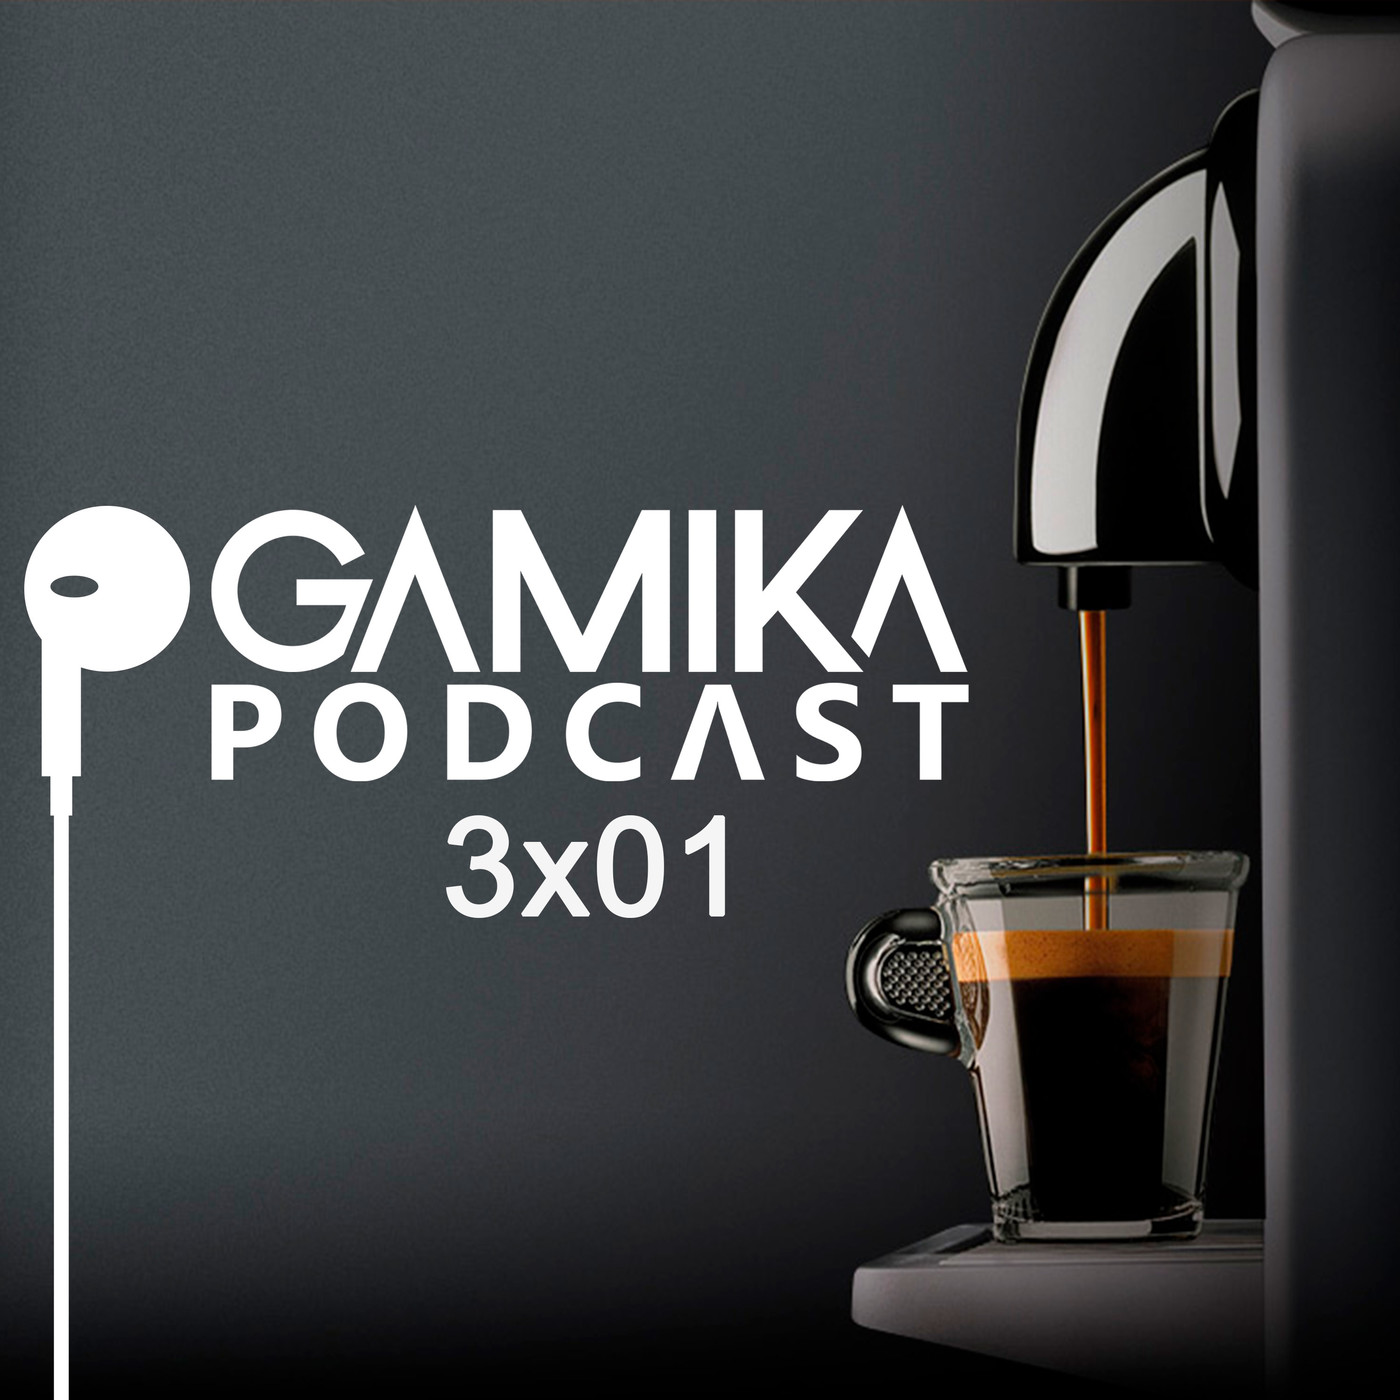 Gamika Podcast 3x01: La factura del verano